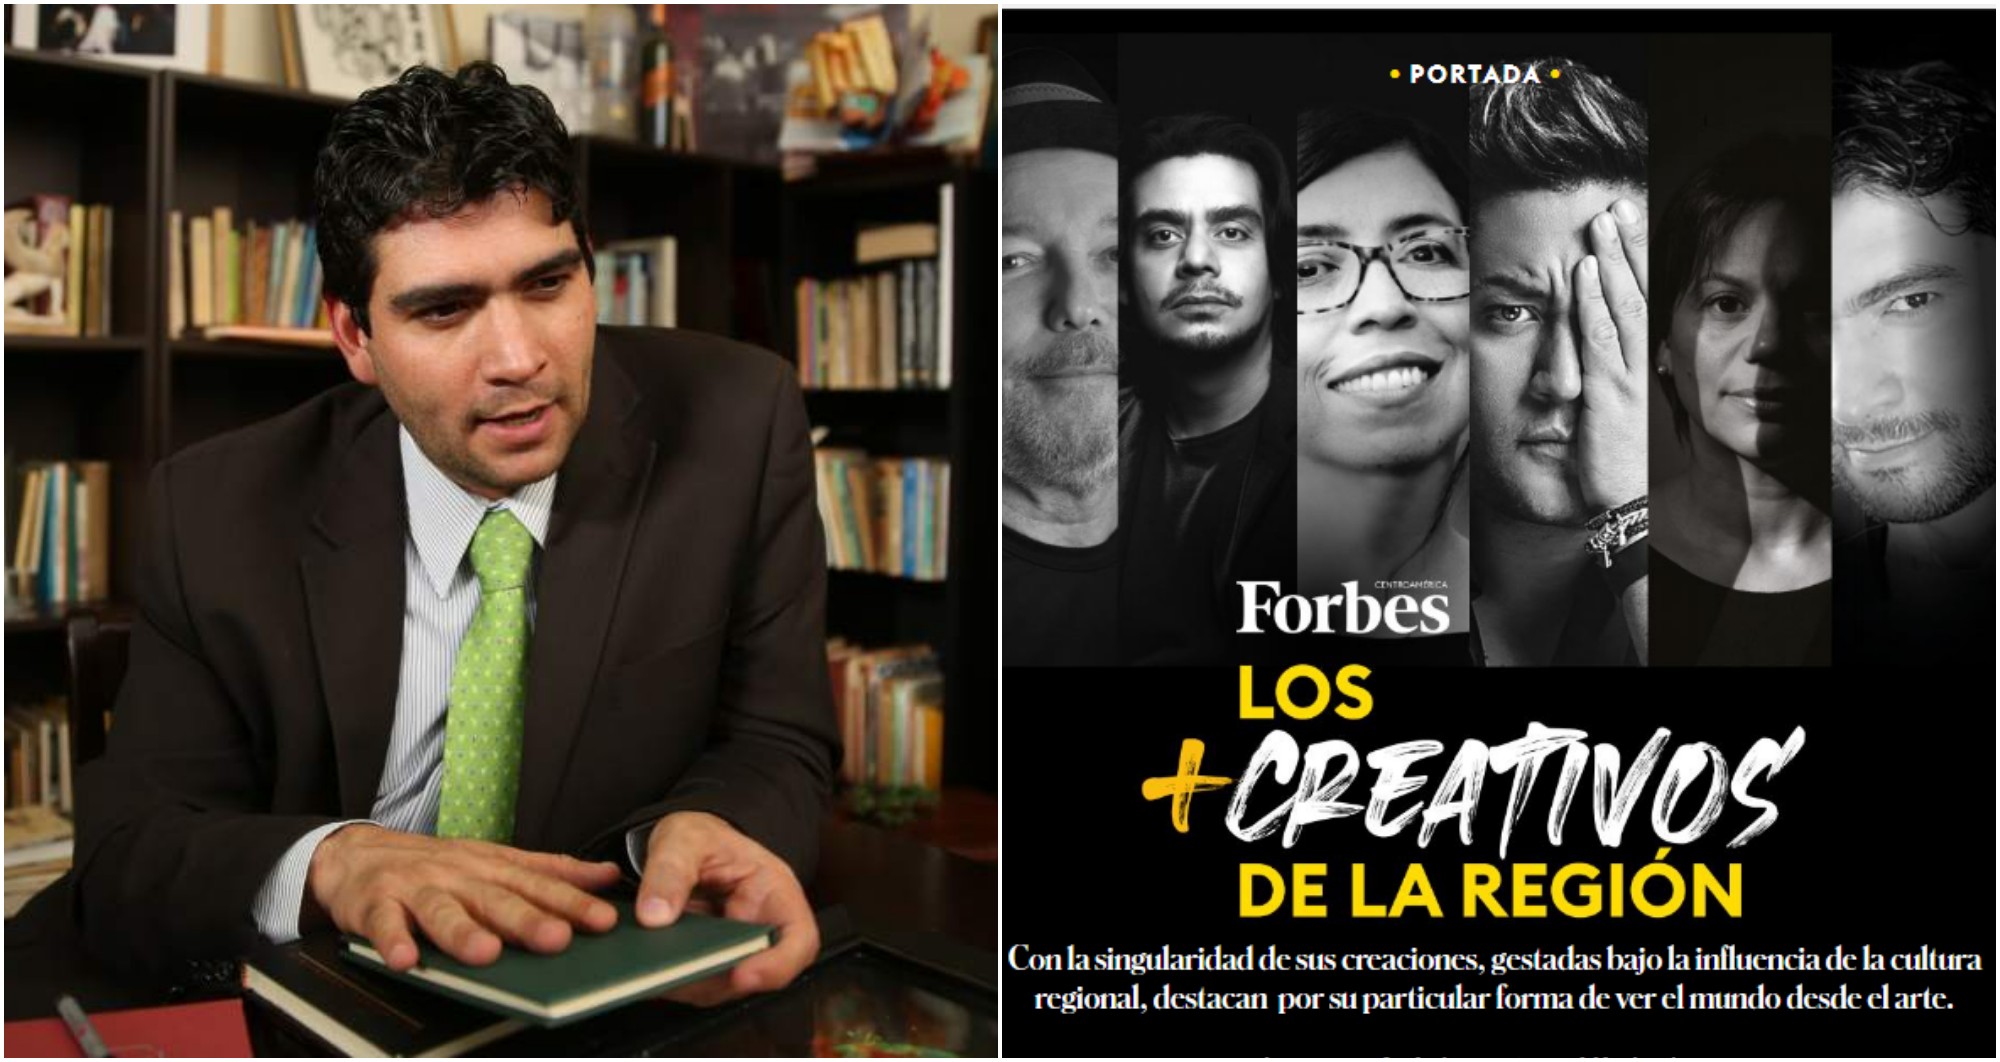 Poeta hondureño Rolando Kattán entre los más creativos según Forbes